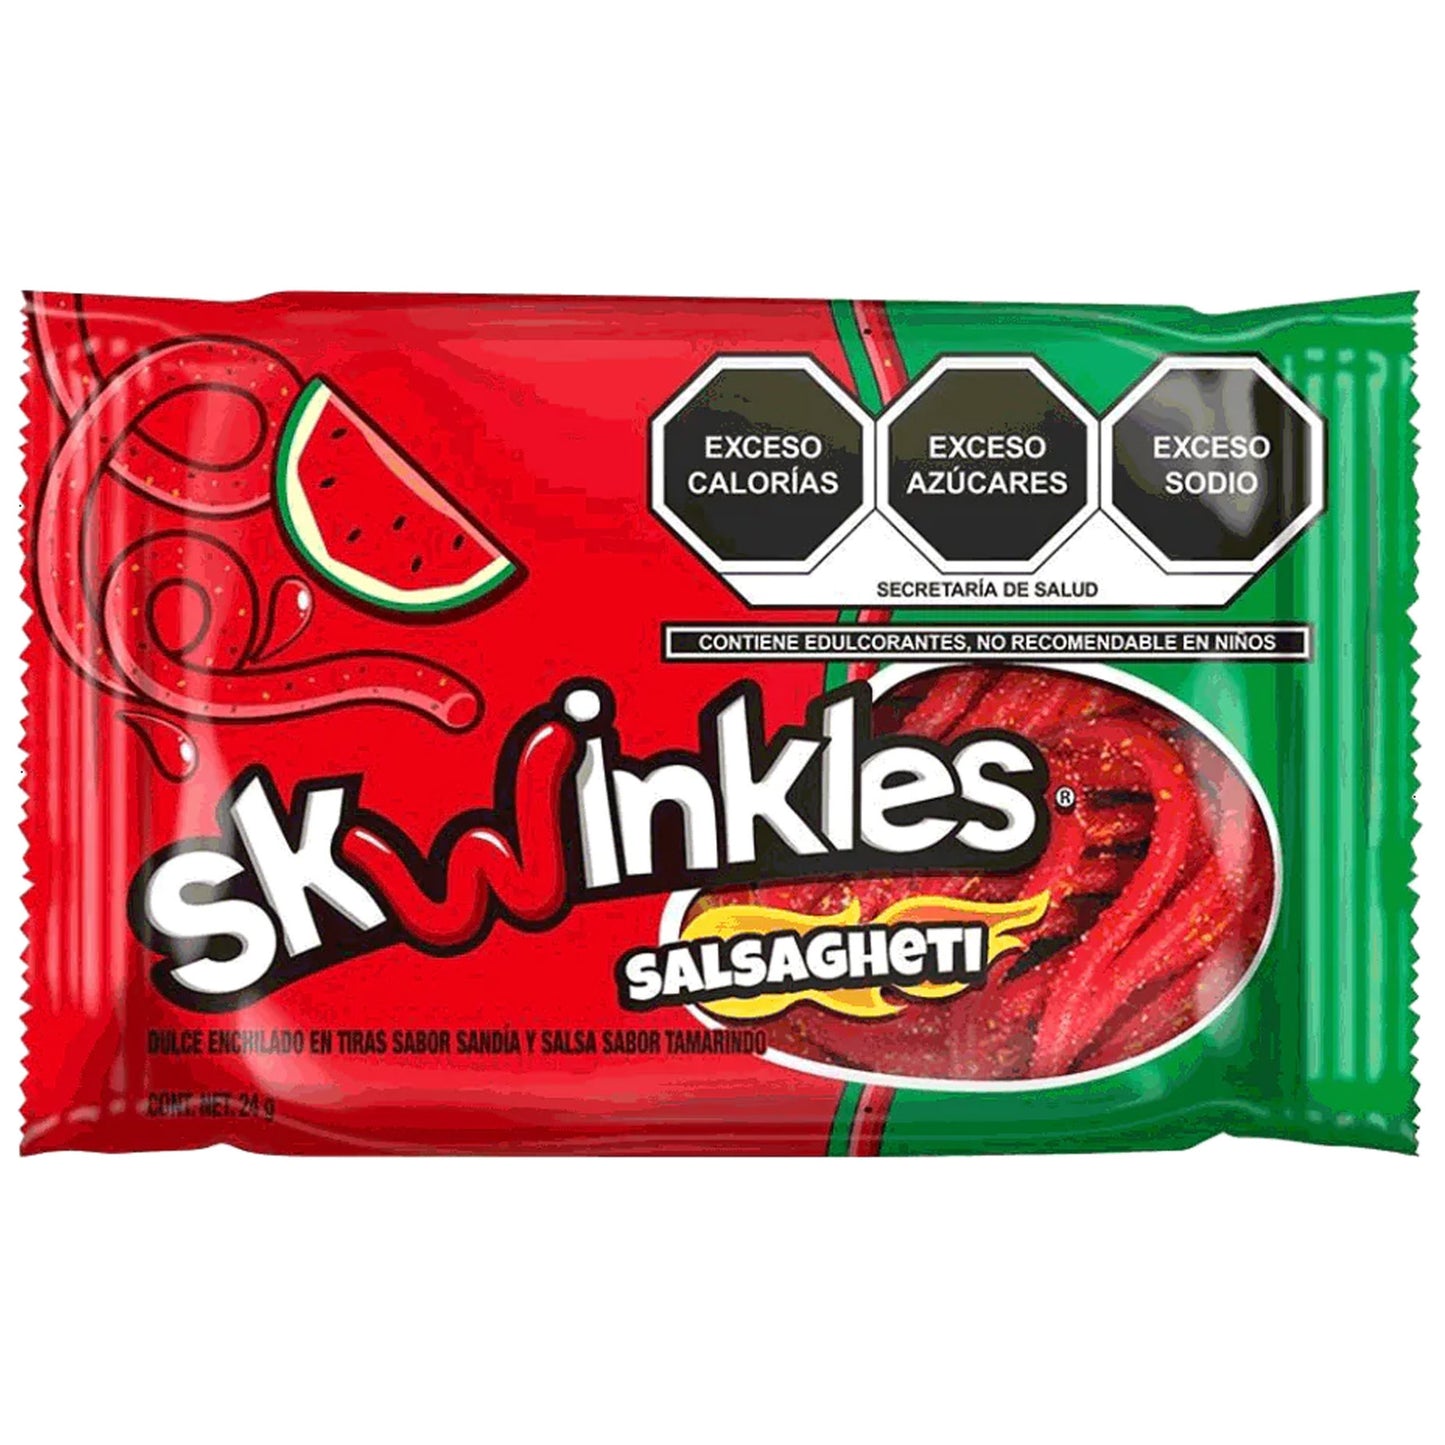 Skwinkles Salsagheti | 12 x 24g